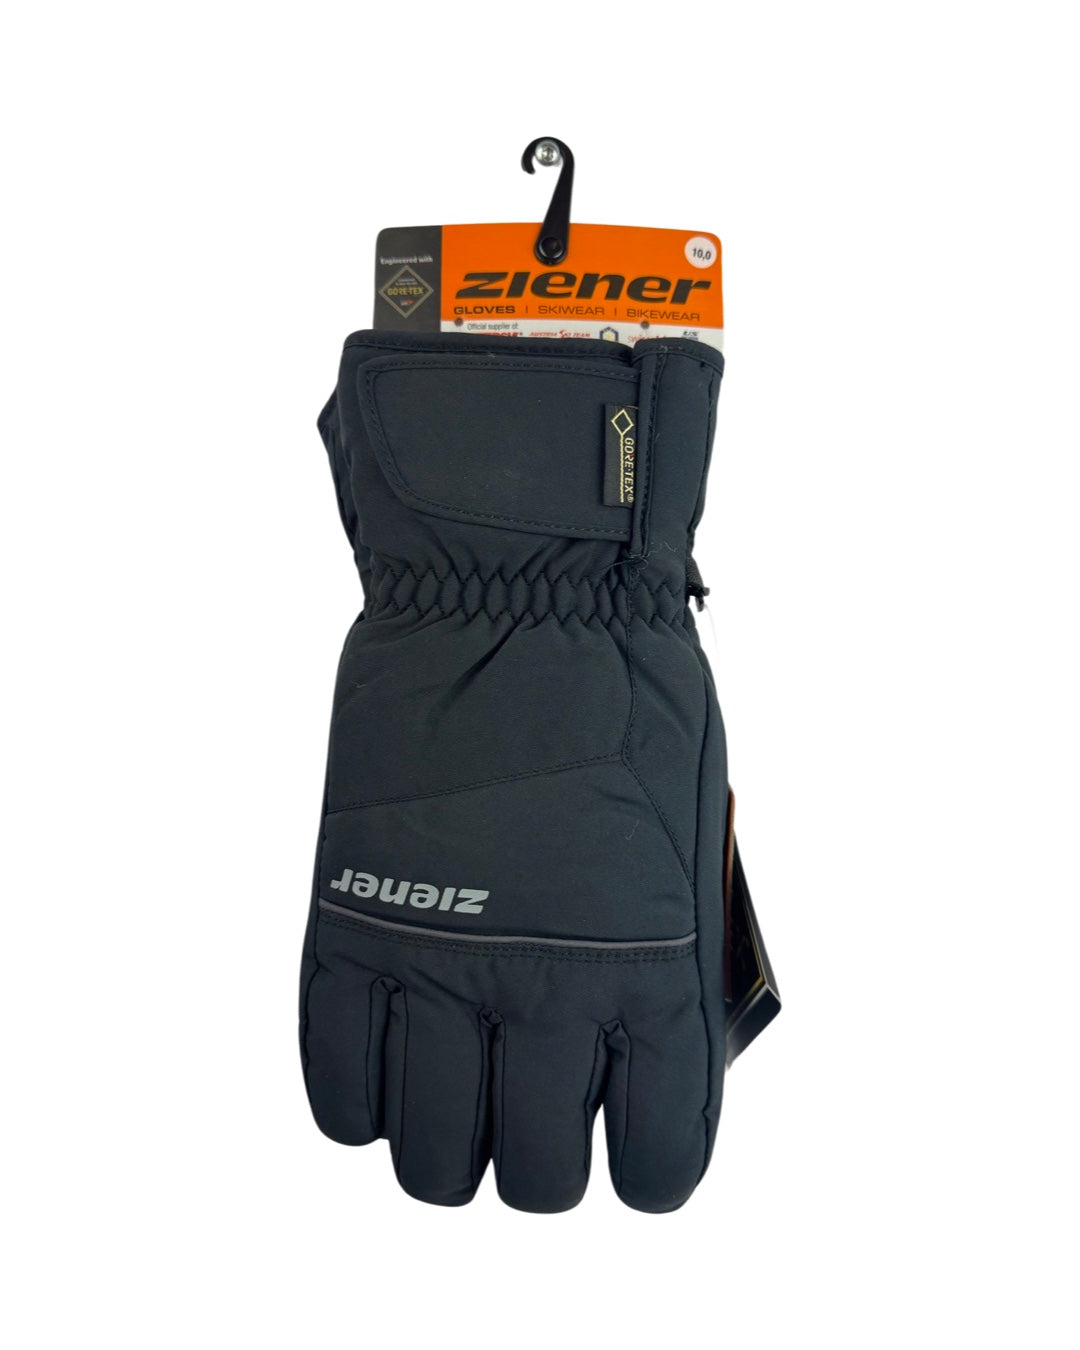 Zierner Ski Gloves Black 